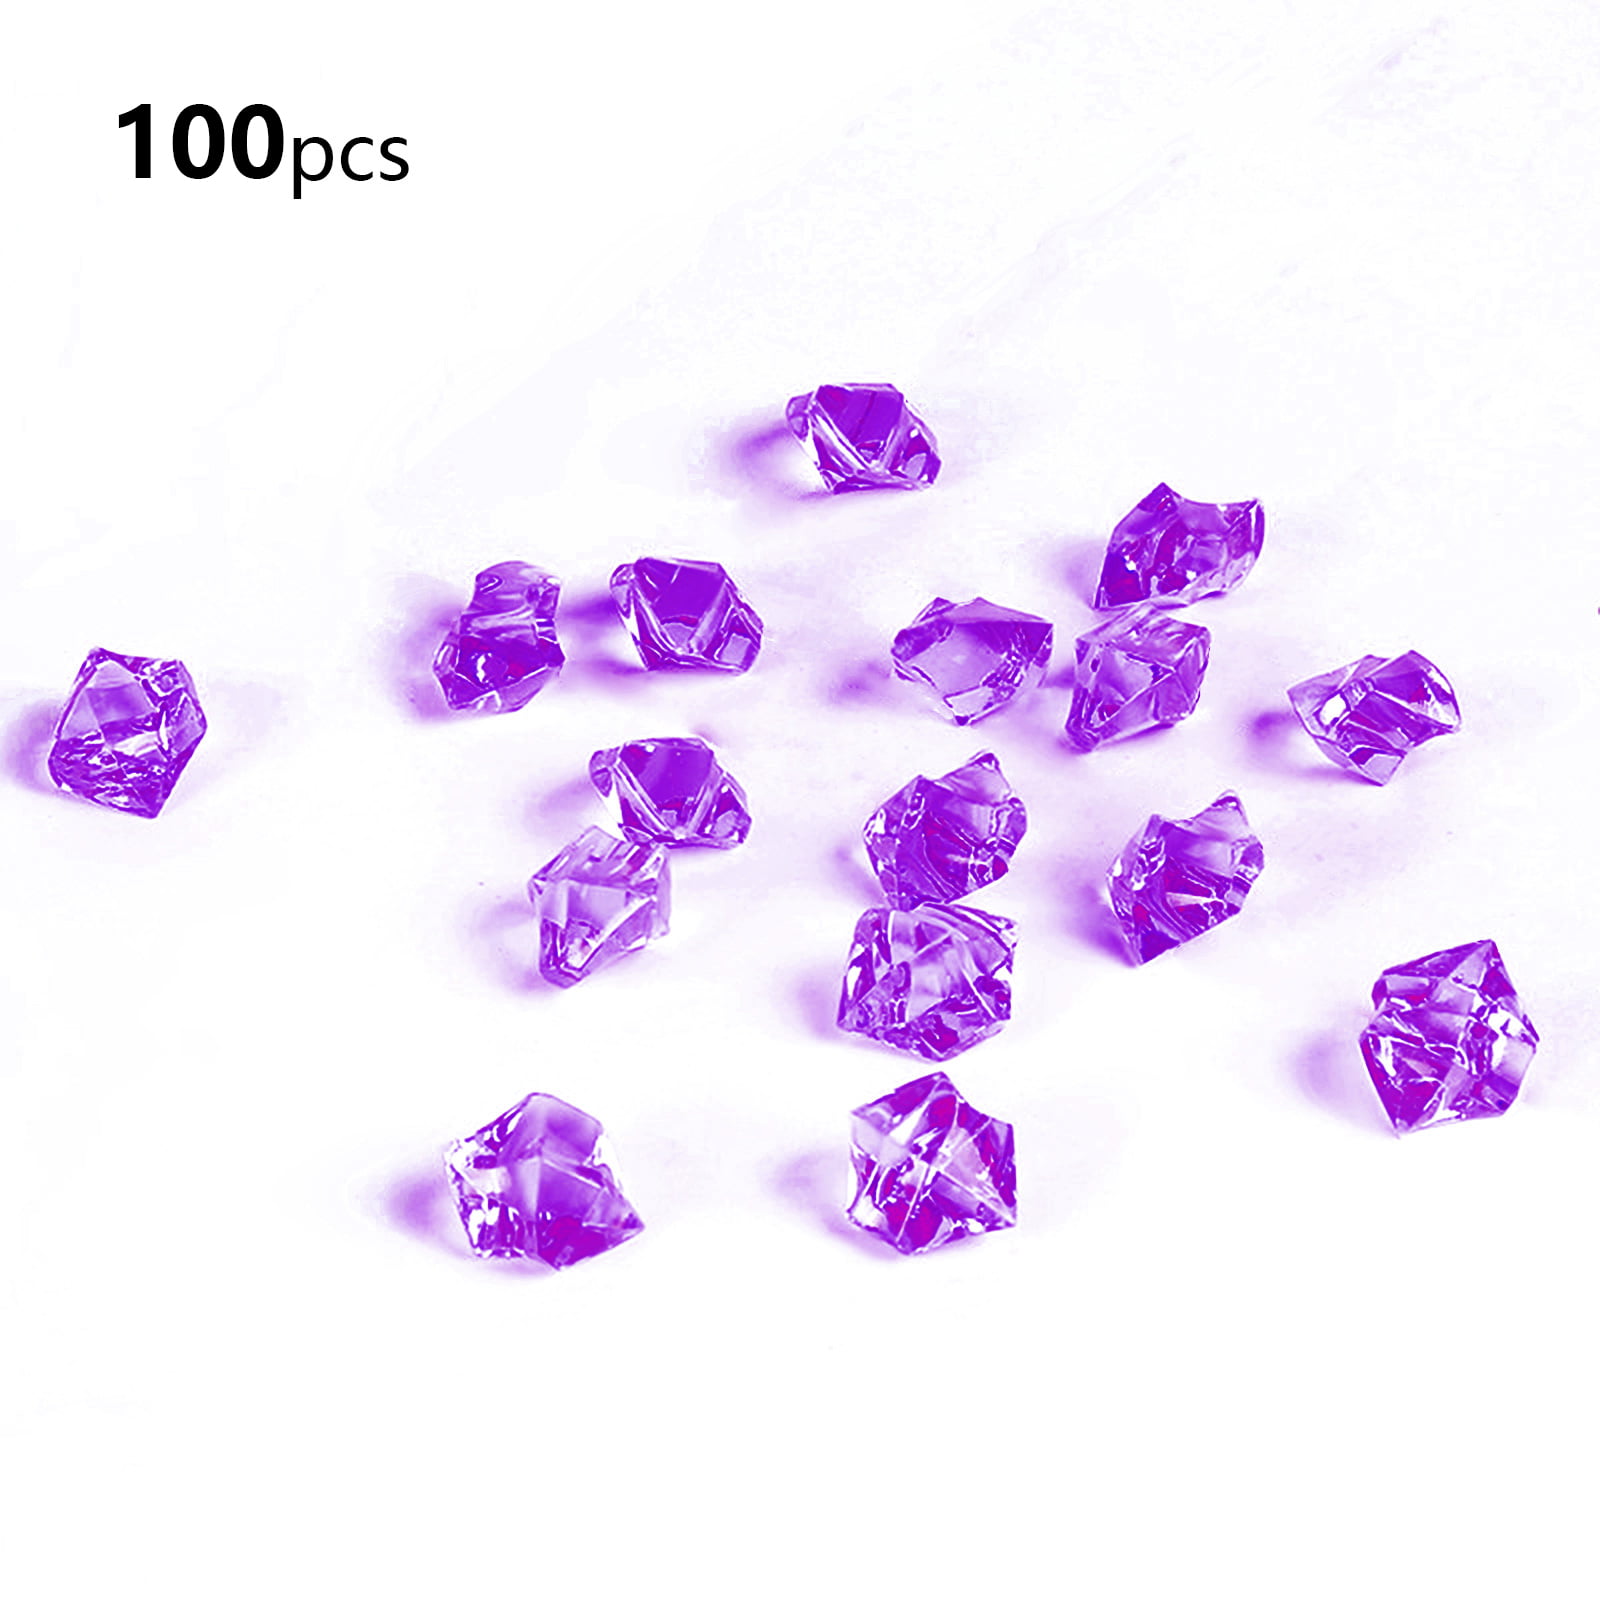 Gogosir 100 Pcs Acrylic Crushed Ice Rocks, Fake Crystals Diamonds